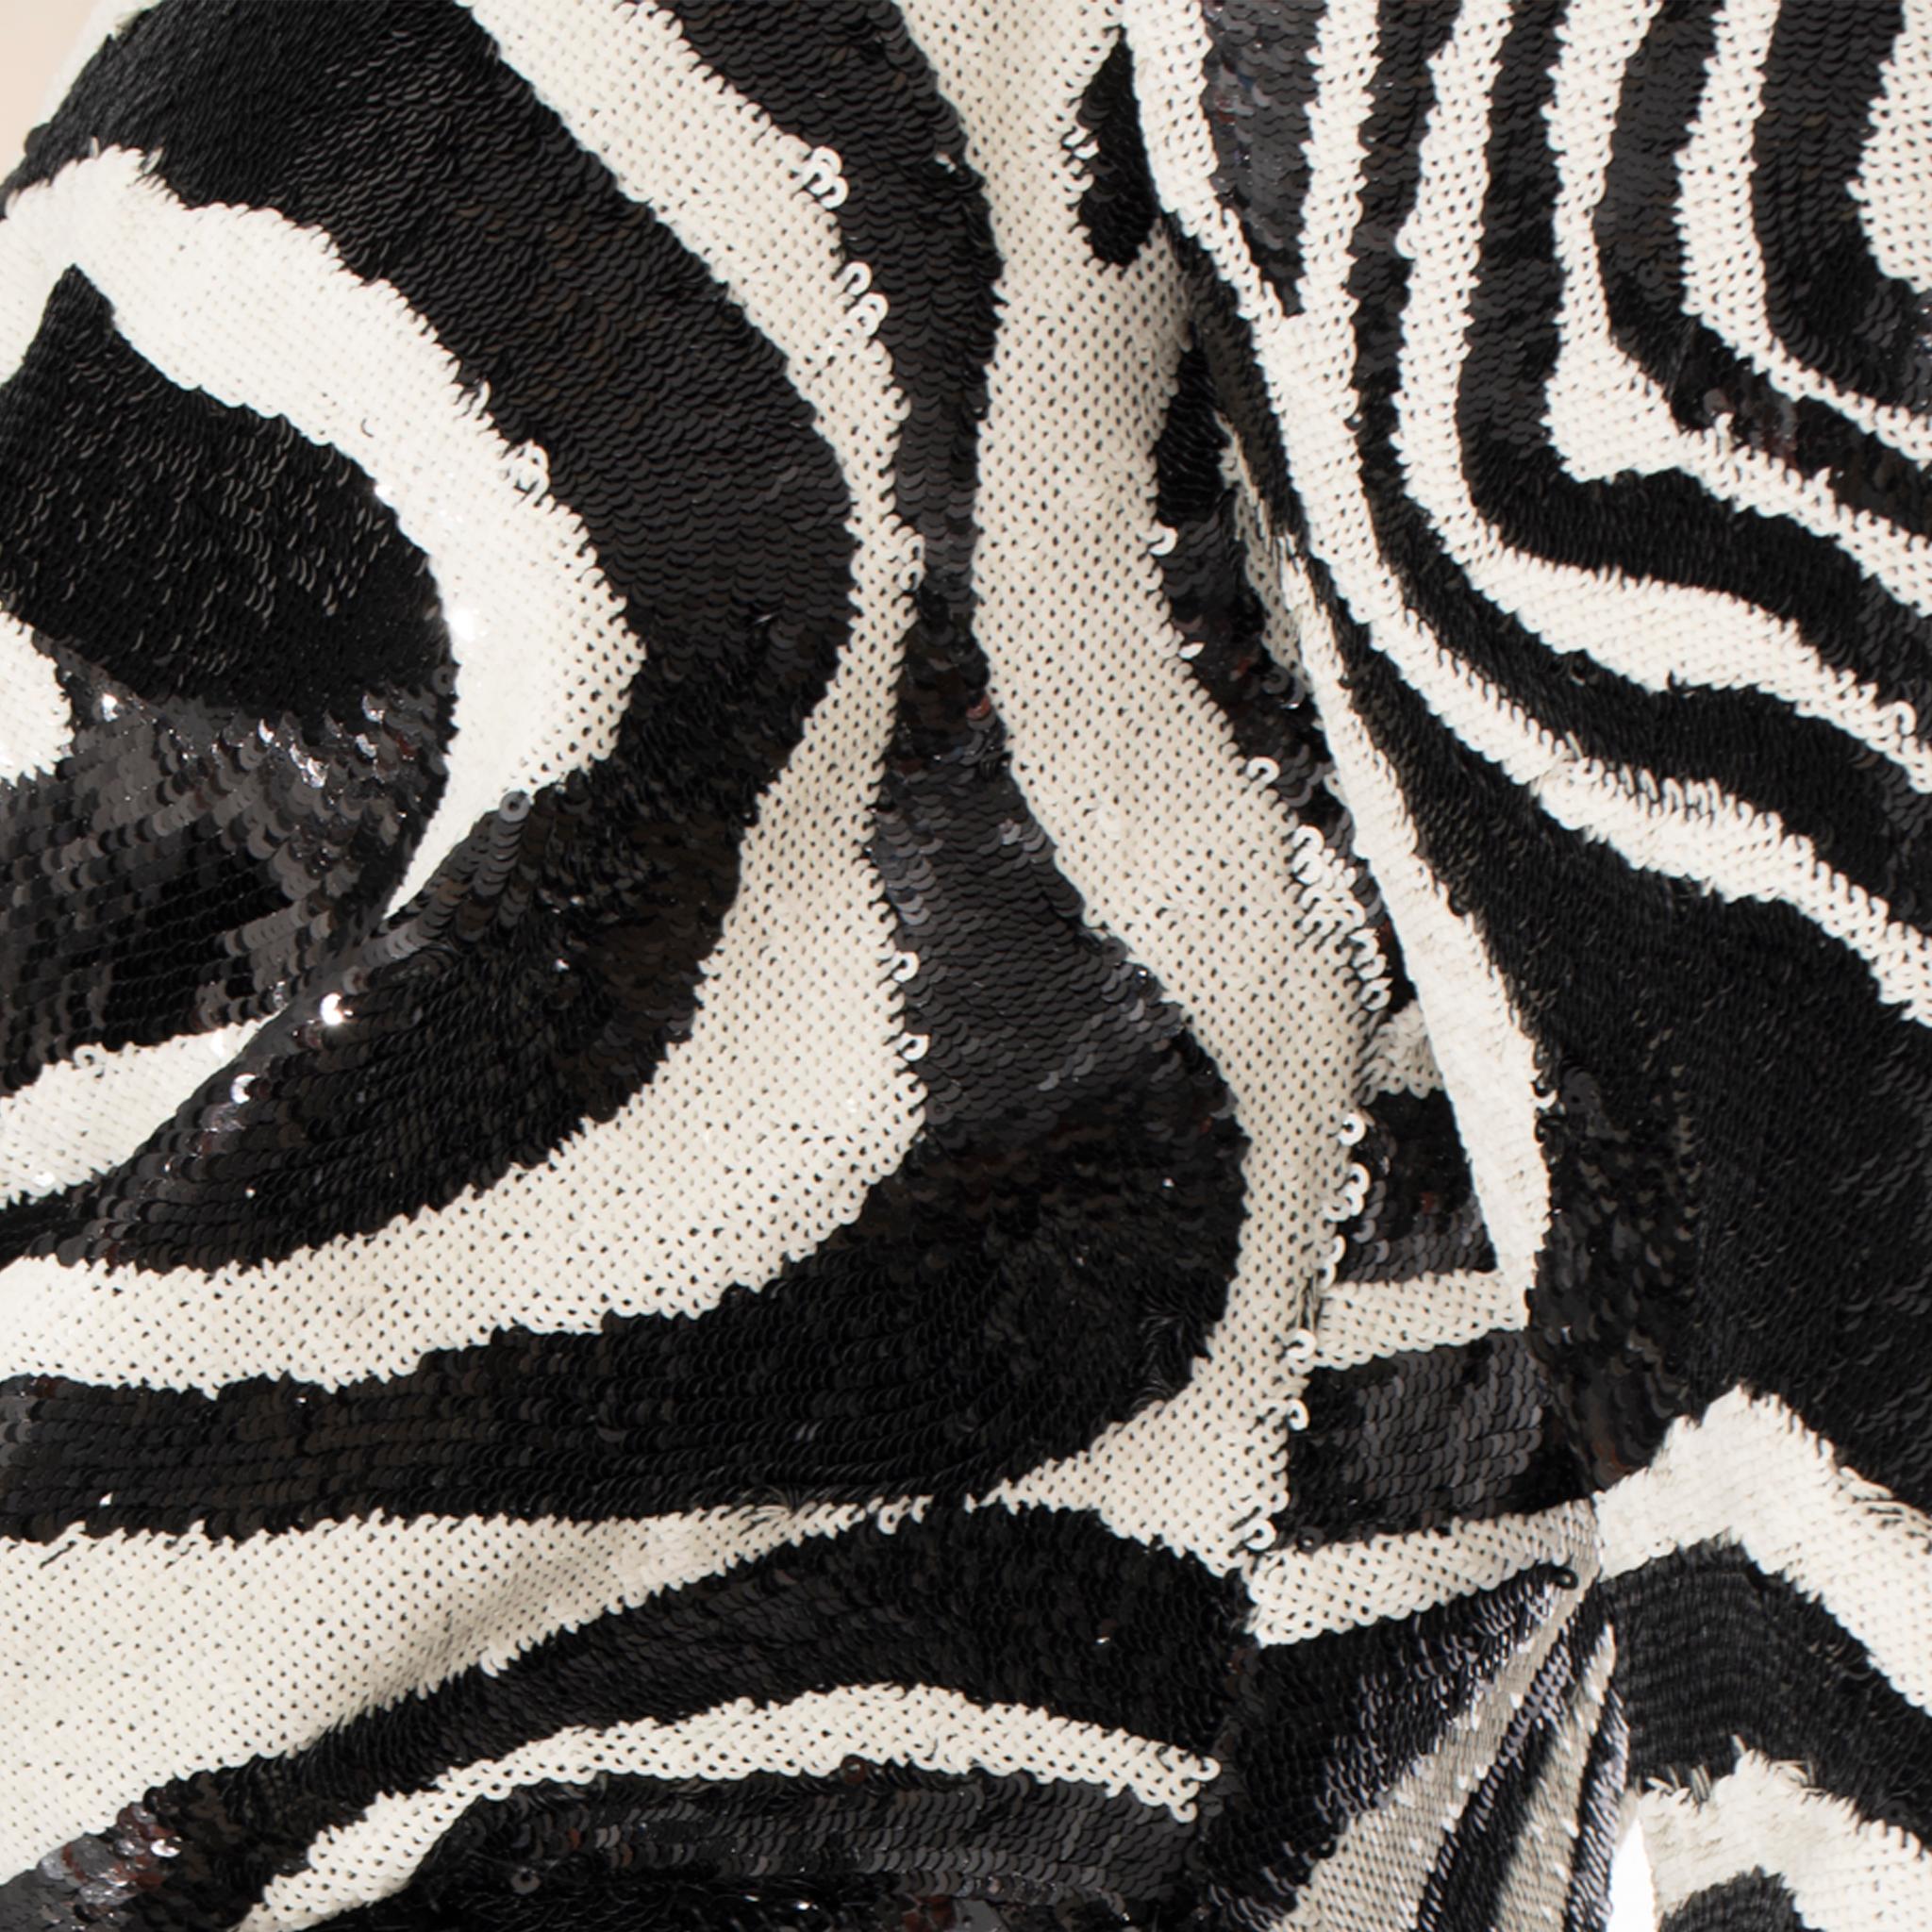 Saint Laurent by Hedi Slimane Asymmetric Zebra Print Sequin Dress 36 FR For Sale 1